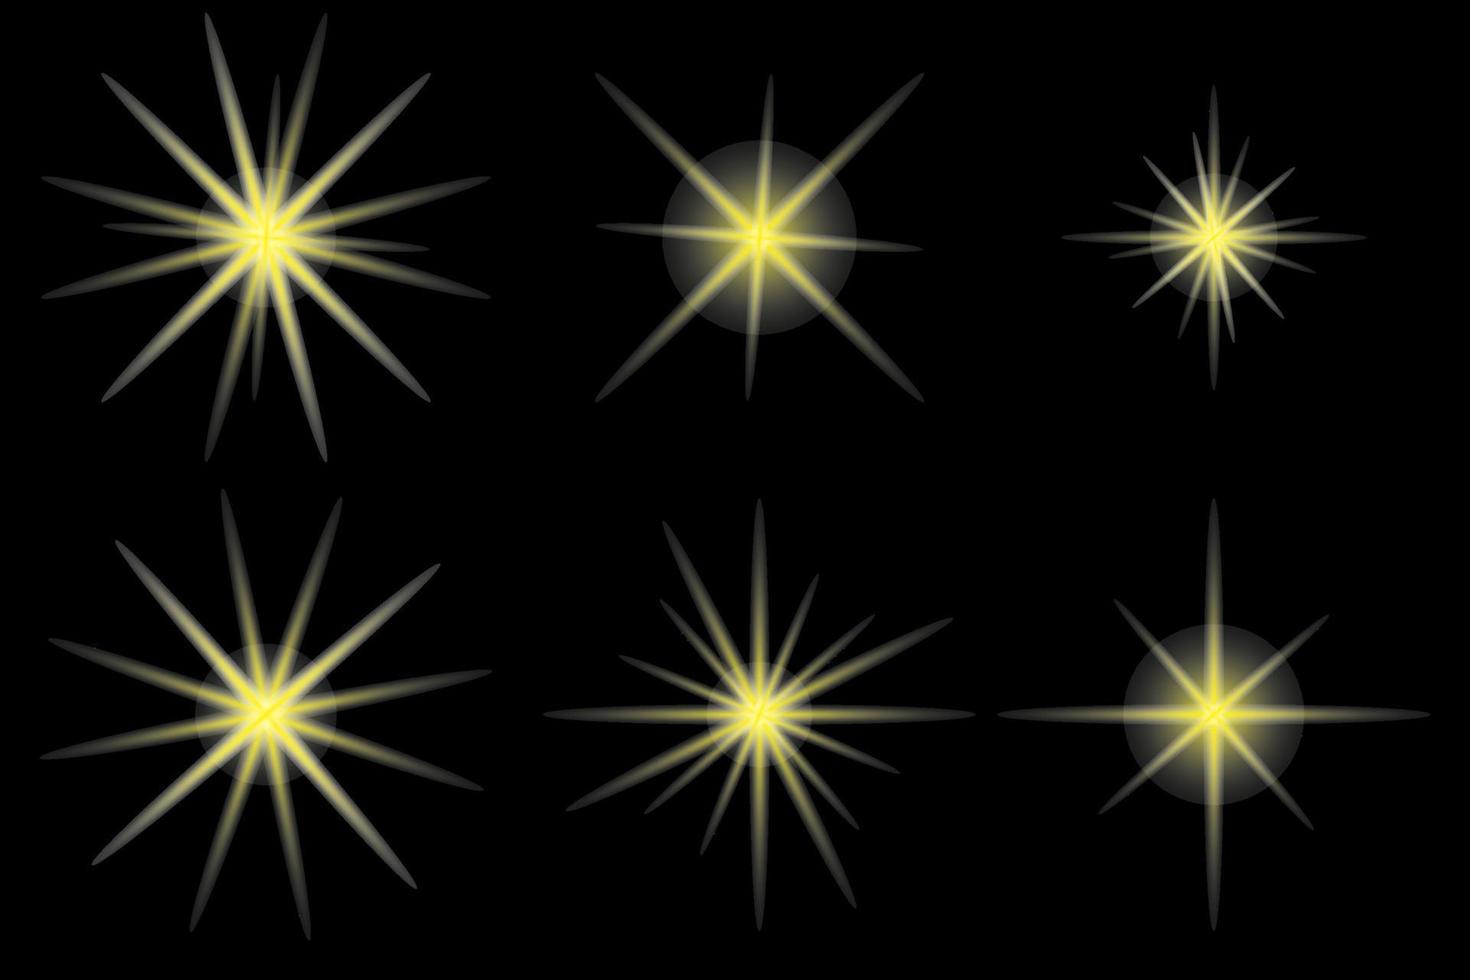 Reihe von gelben Sternen auf schwarzem Hintergrund vektor